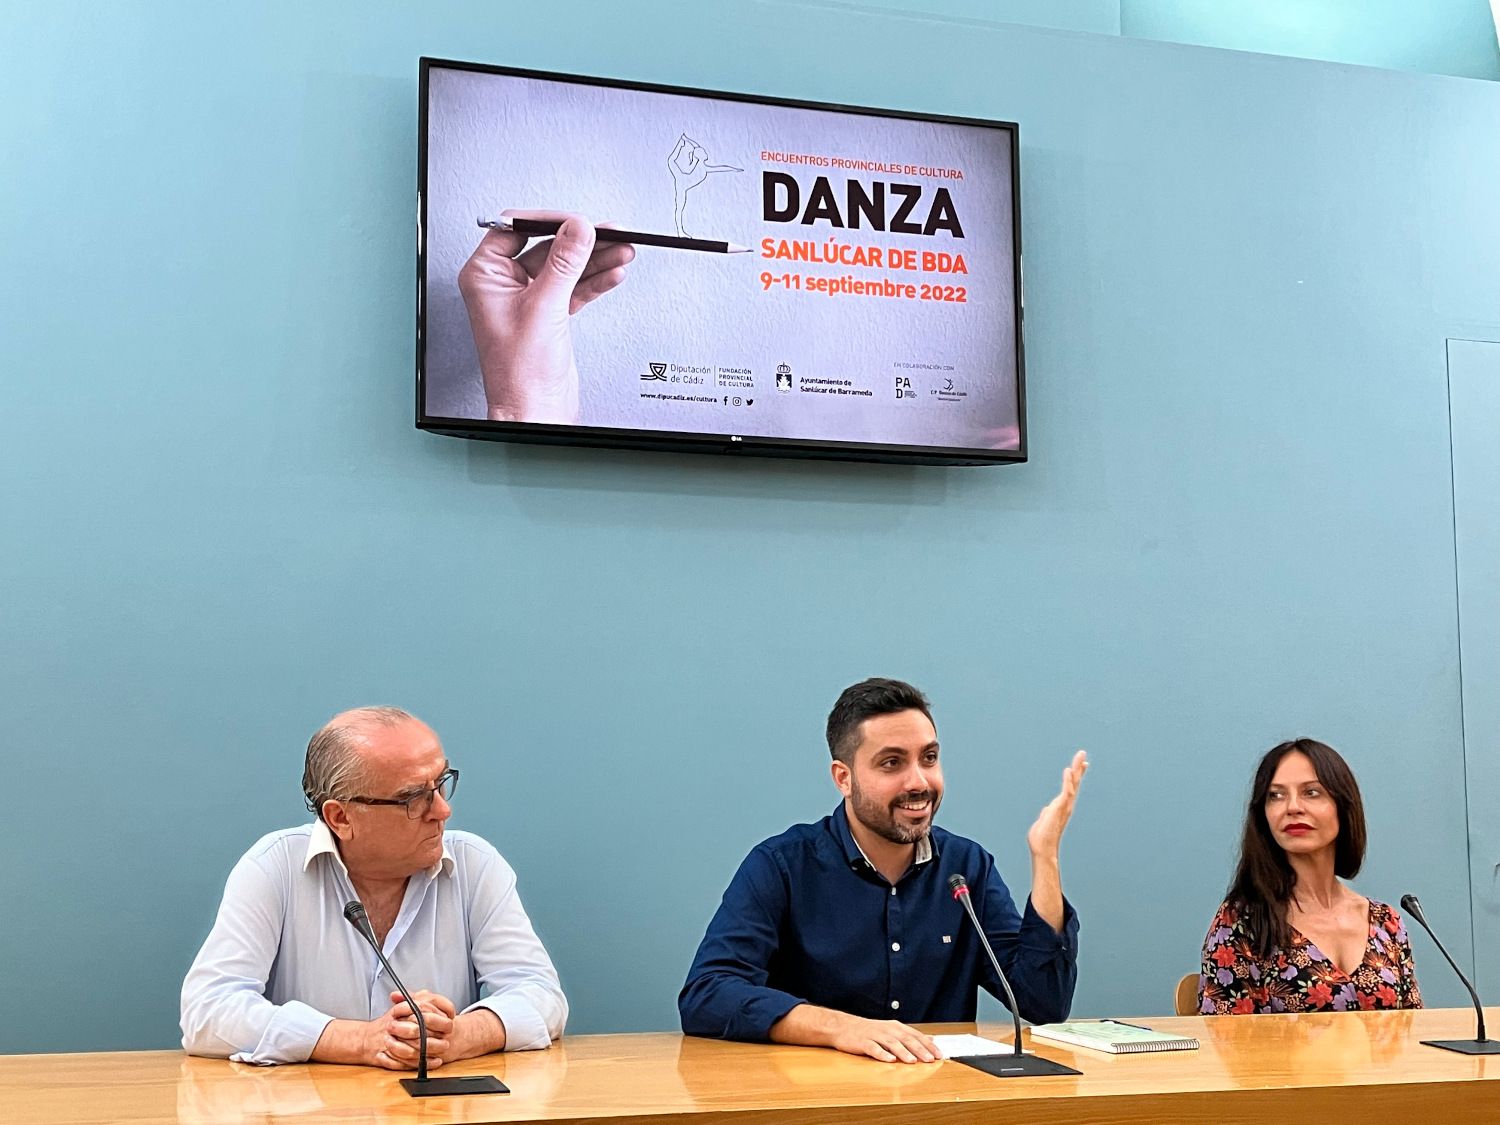 Antonio González Mellado, en el centro, junto a Manuel Lobato y Mónica González, en la presentación del encuentro de danza en Sanlúcar.